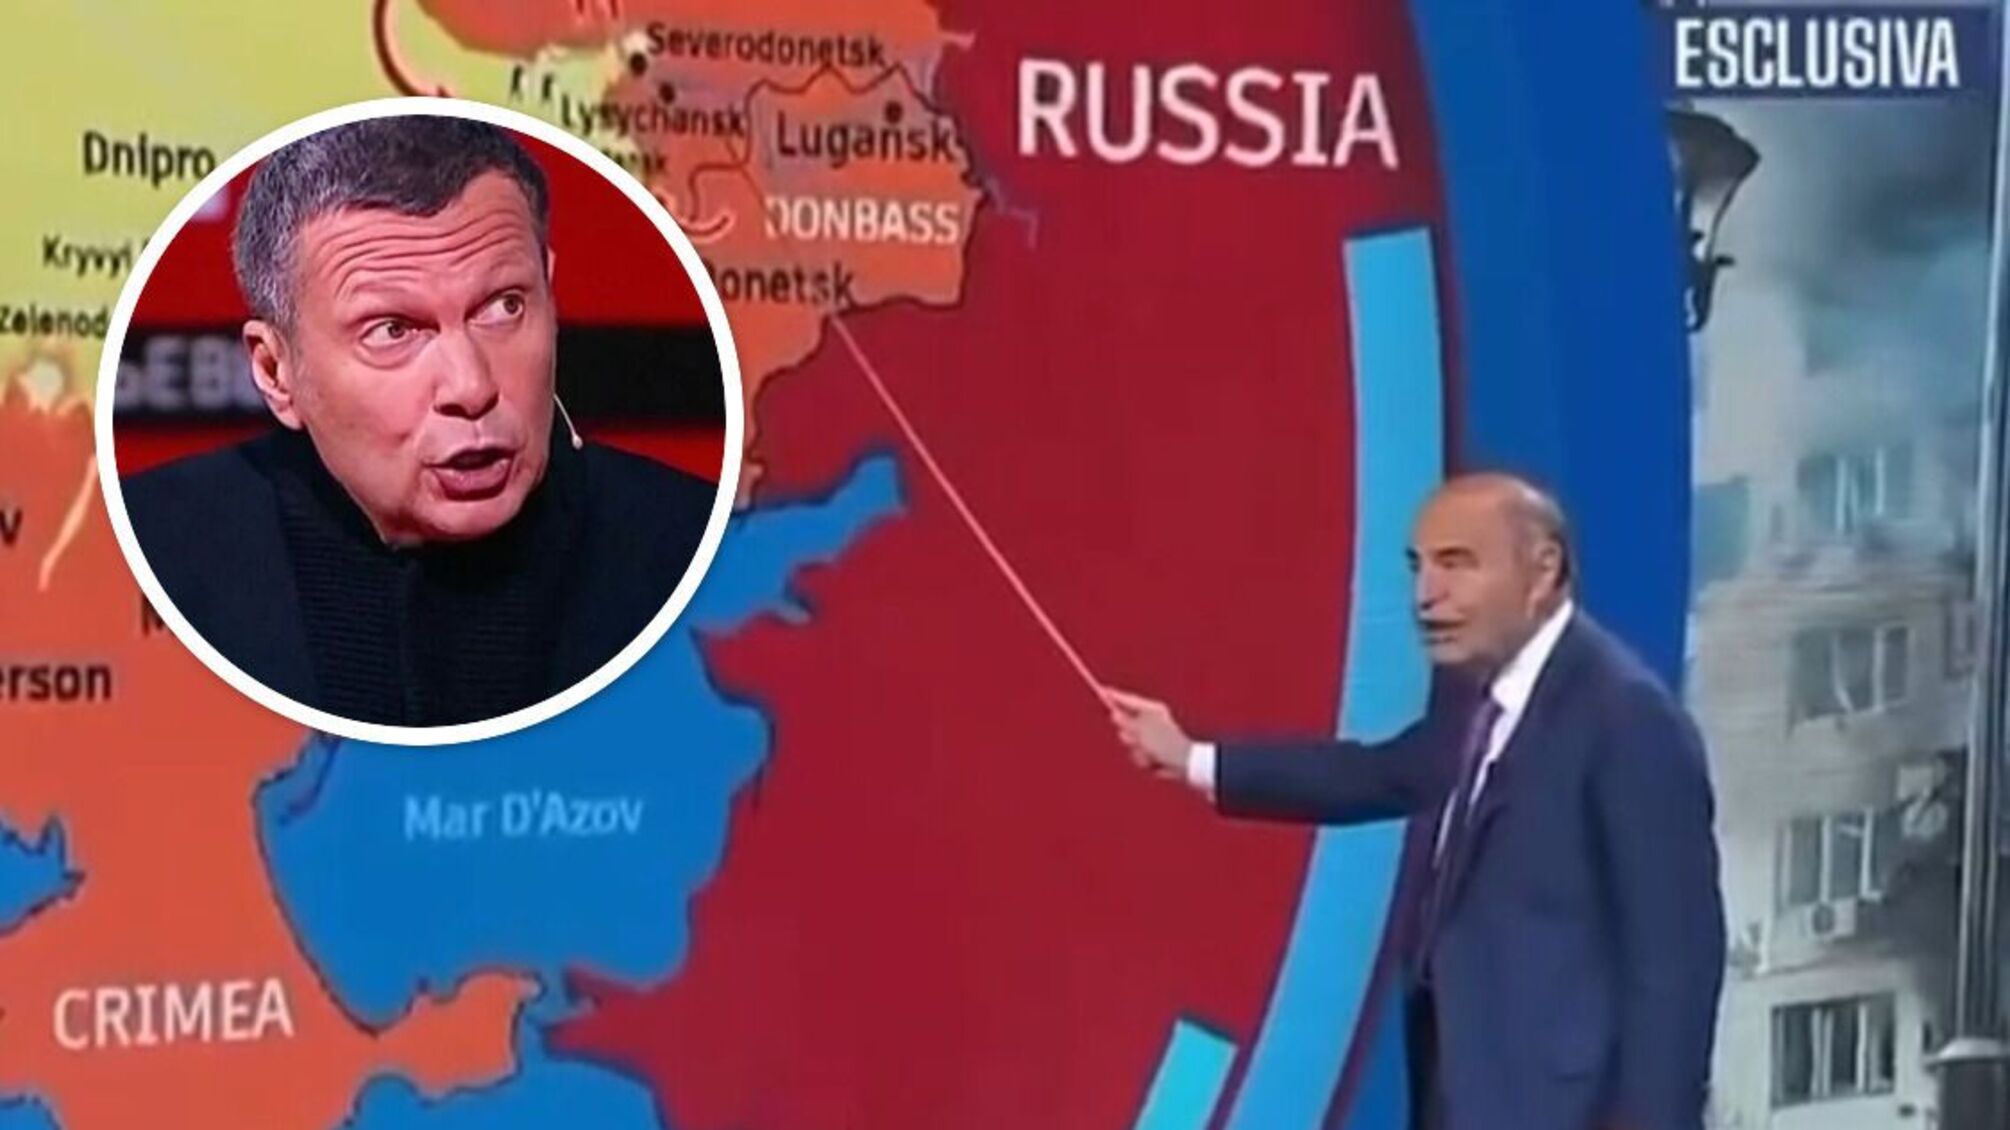 Итальянский ведущий подловил пропагандиста Соловьева на лжи в прямом эфире (видео)